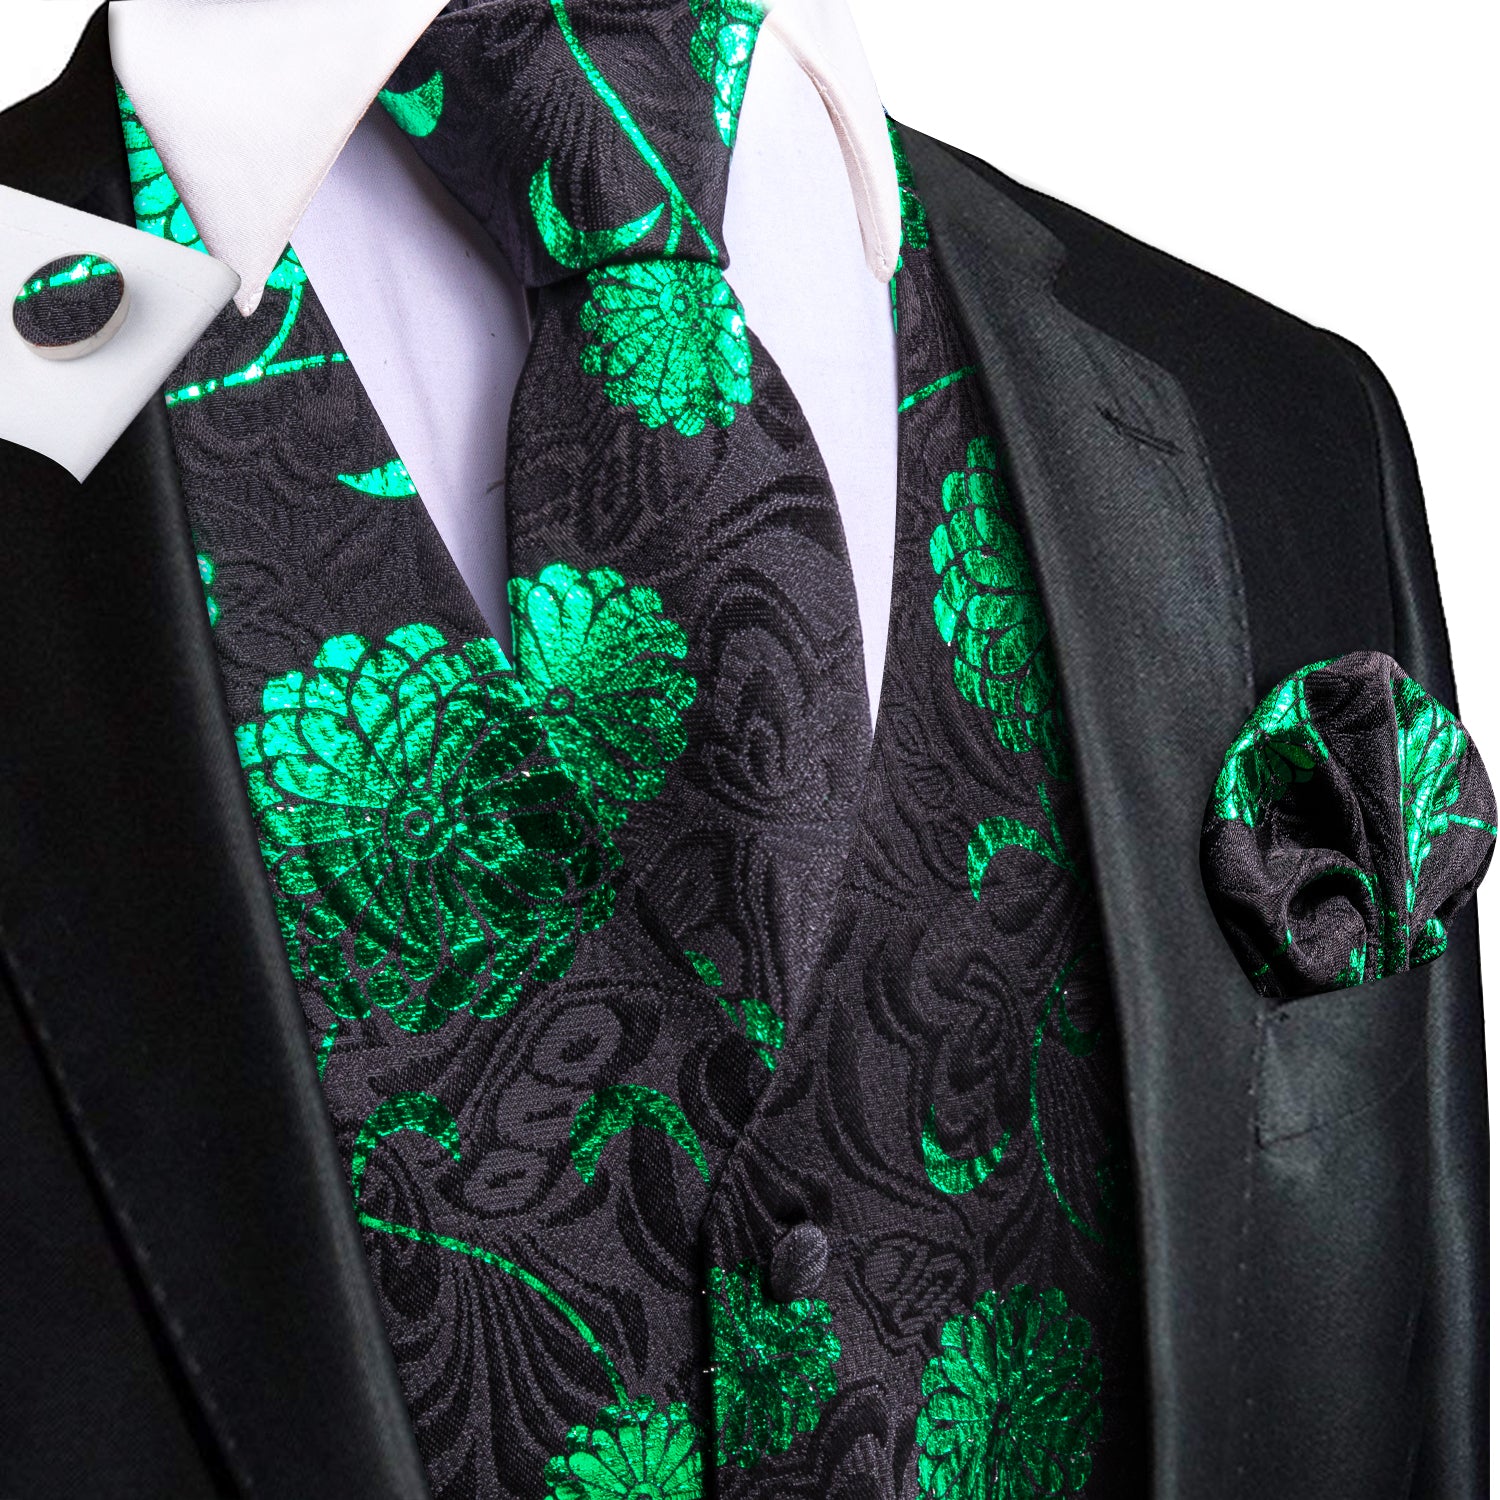 Black Green Floral Men's Vest Hanky Cufflinks Tie Set